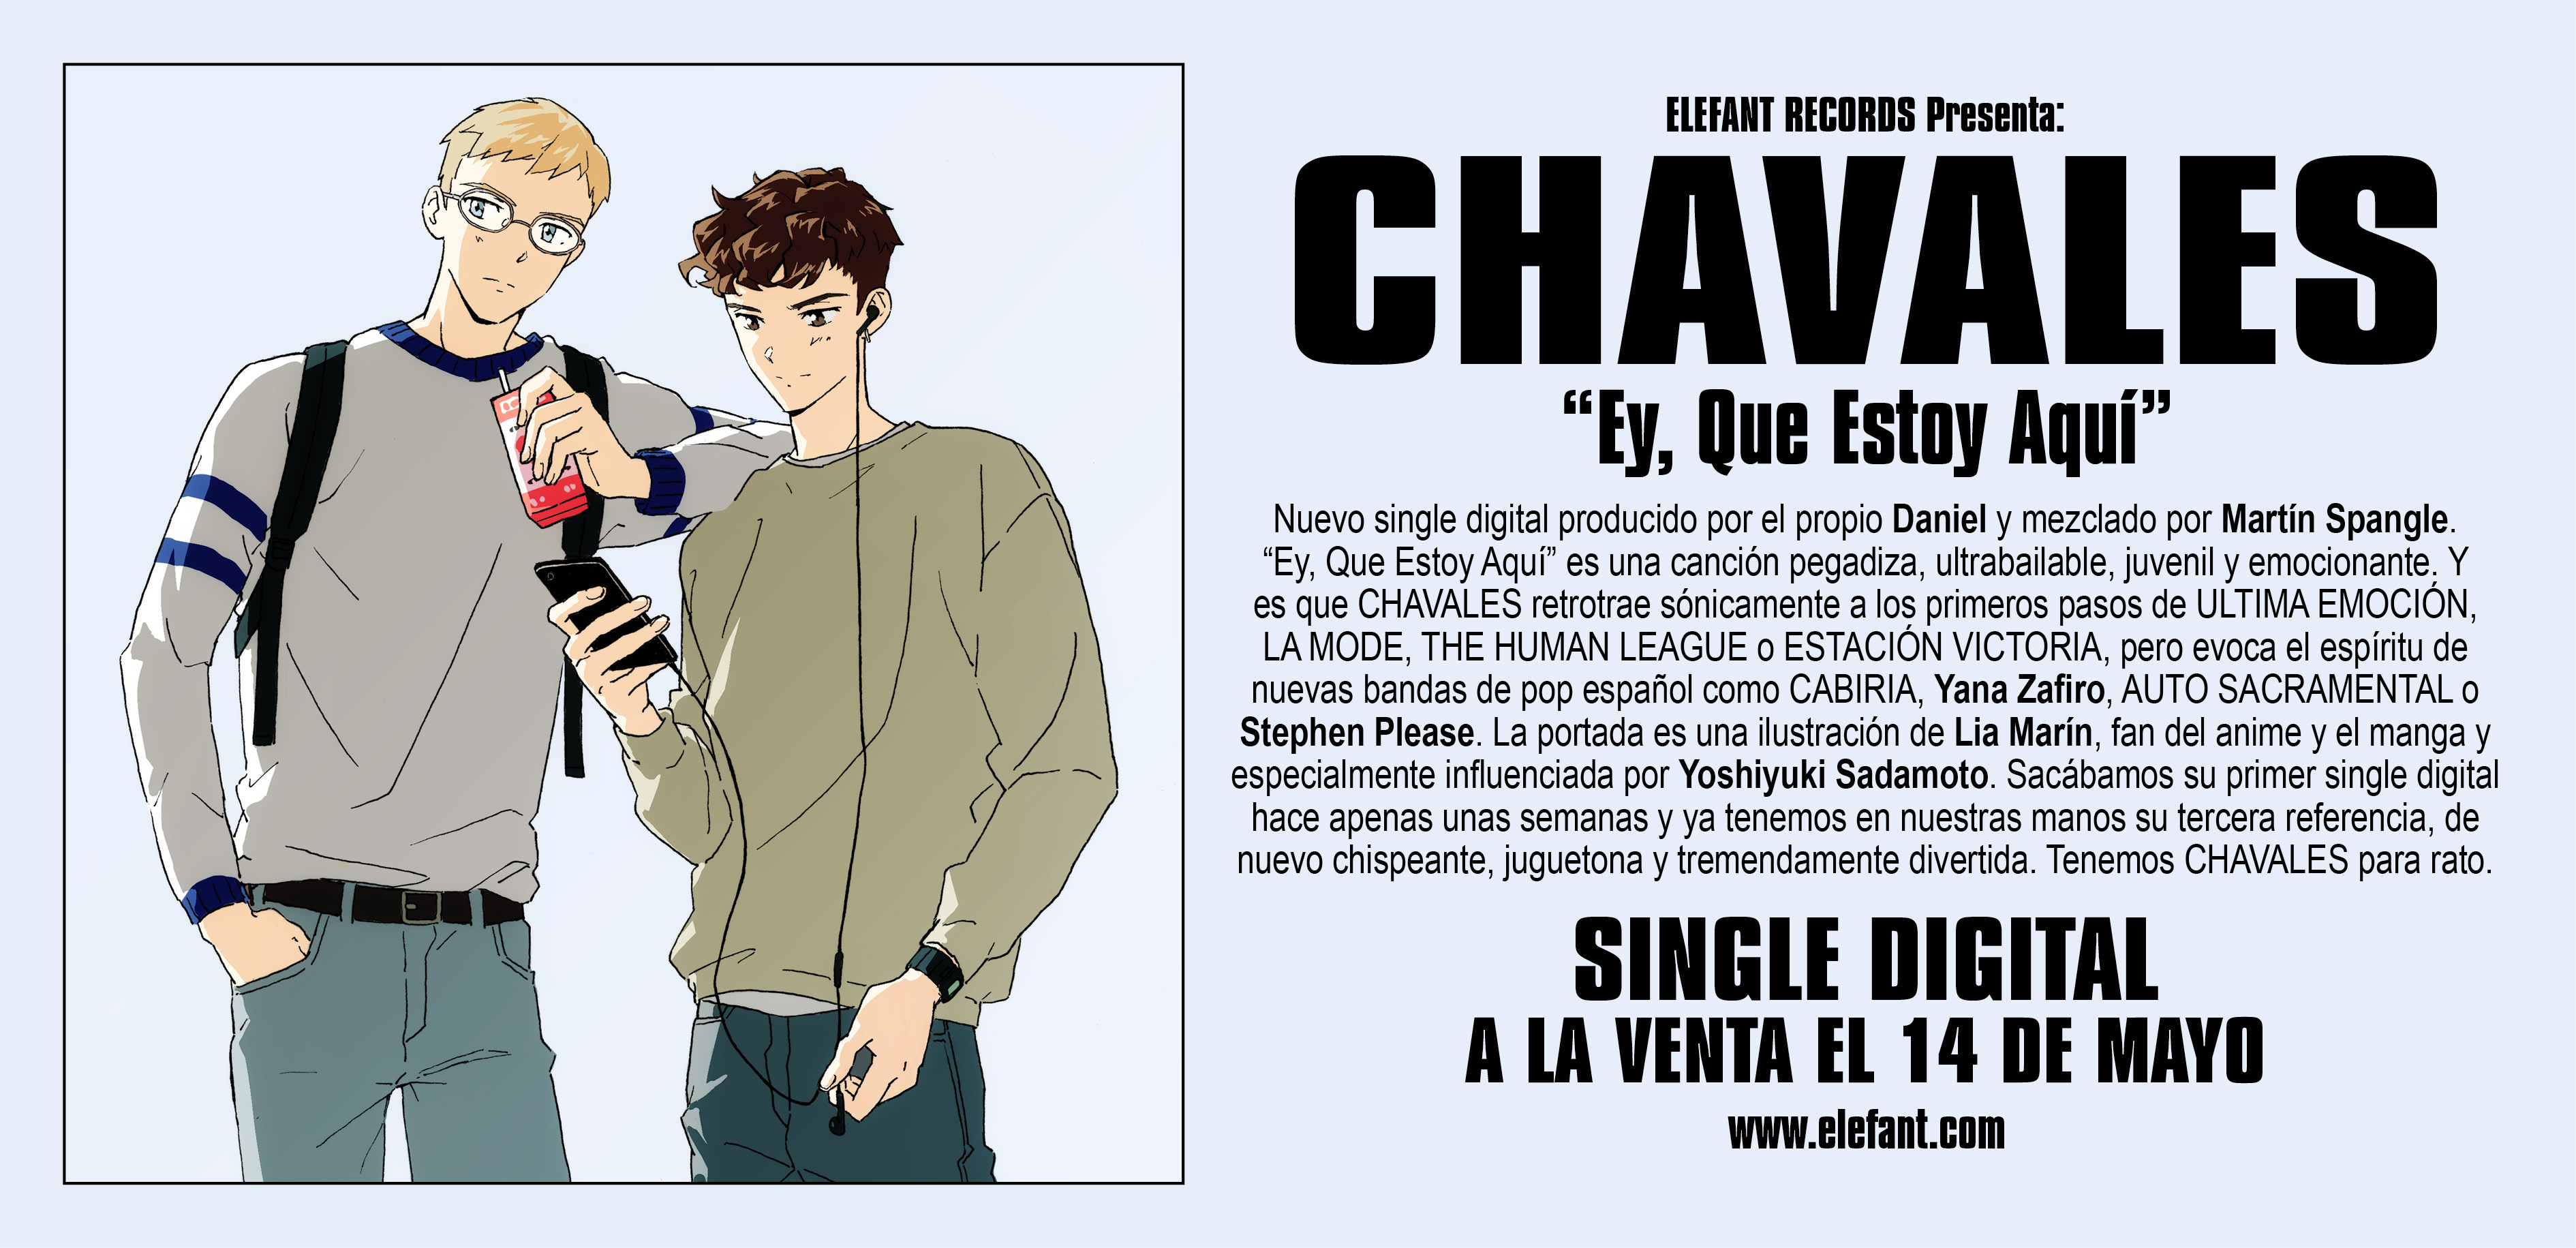 Chavales "Ey, Que Estoy Aquí" Digital Single